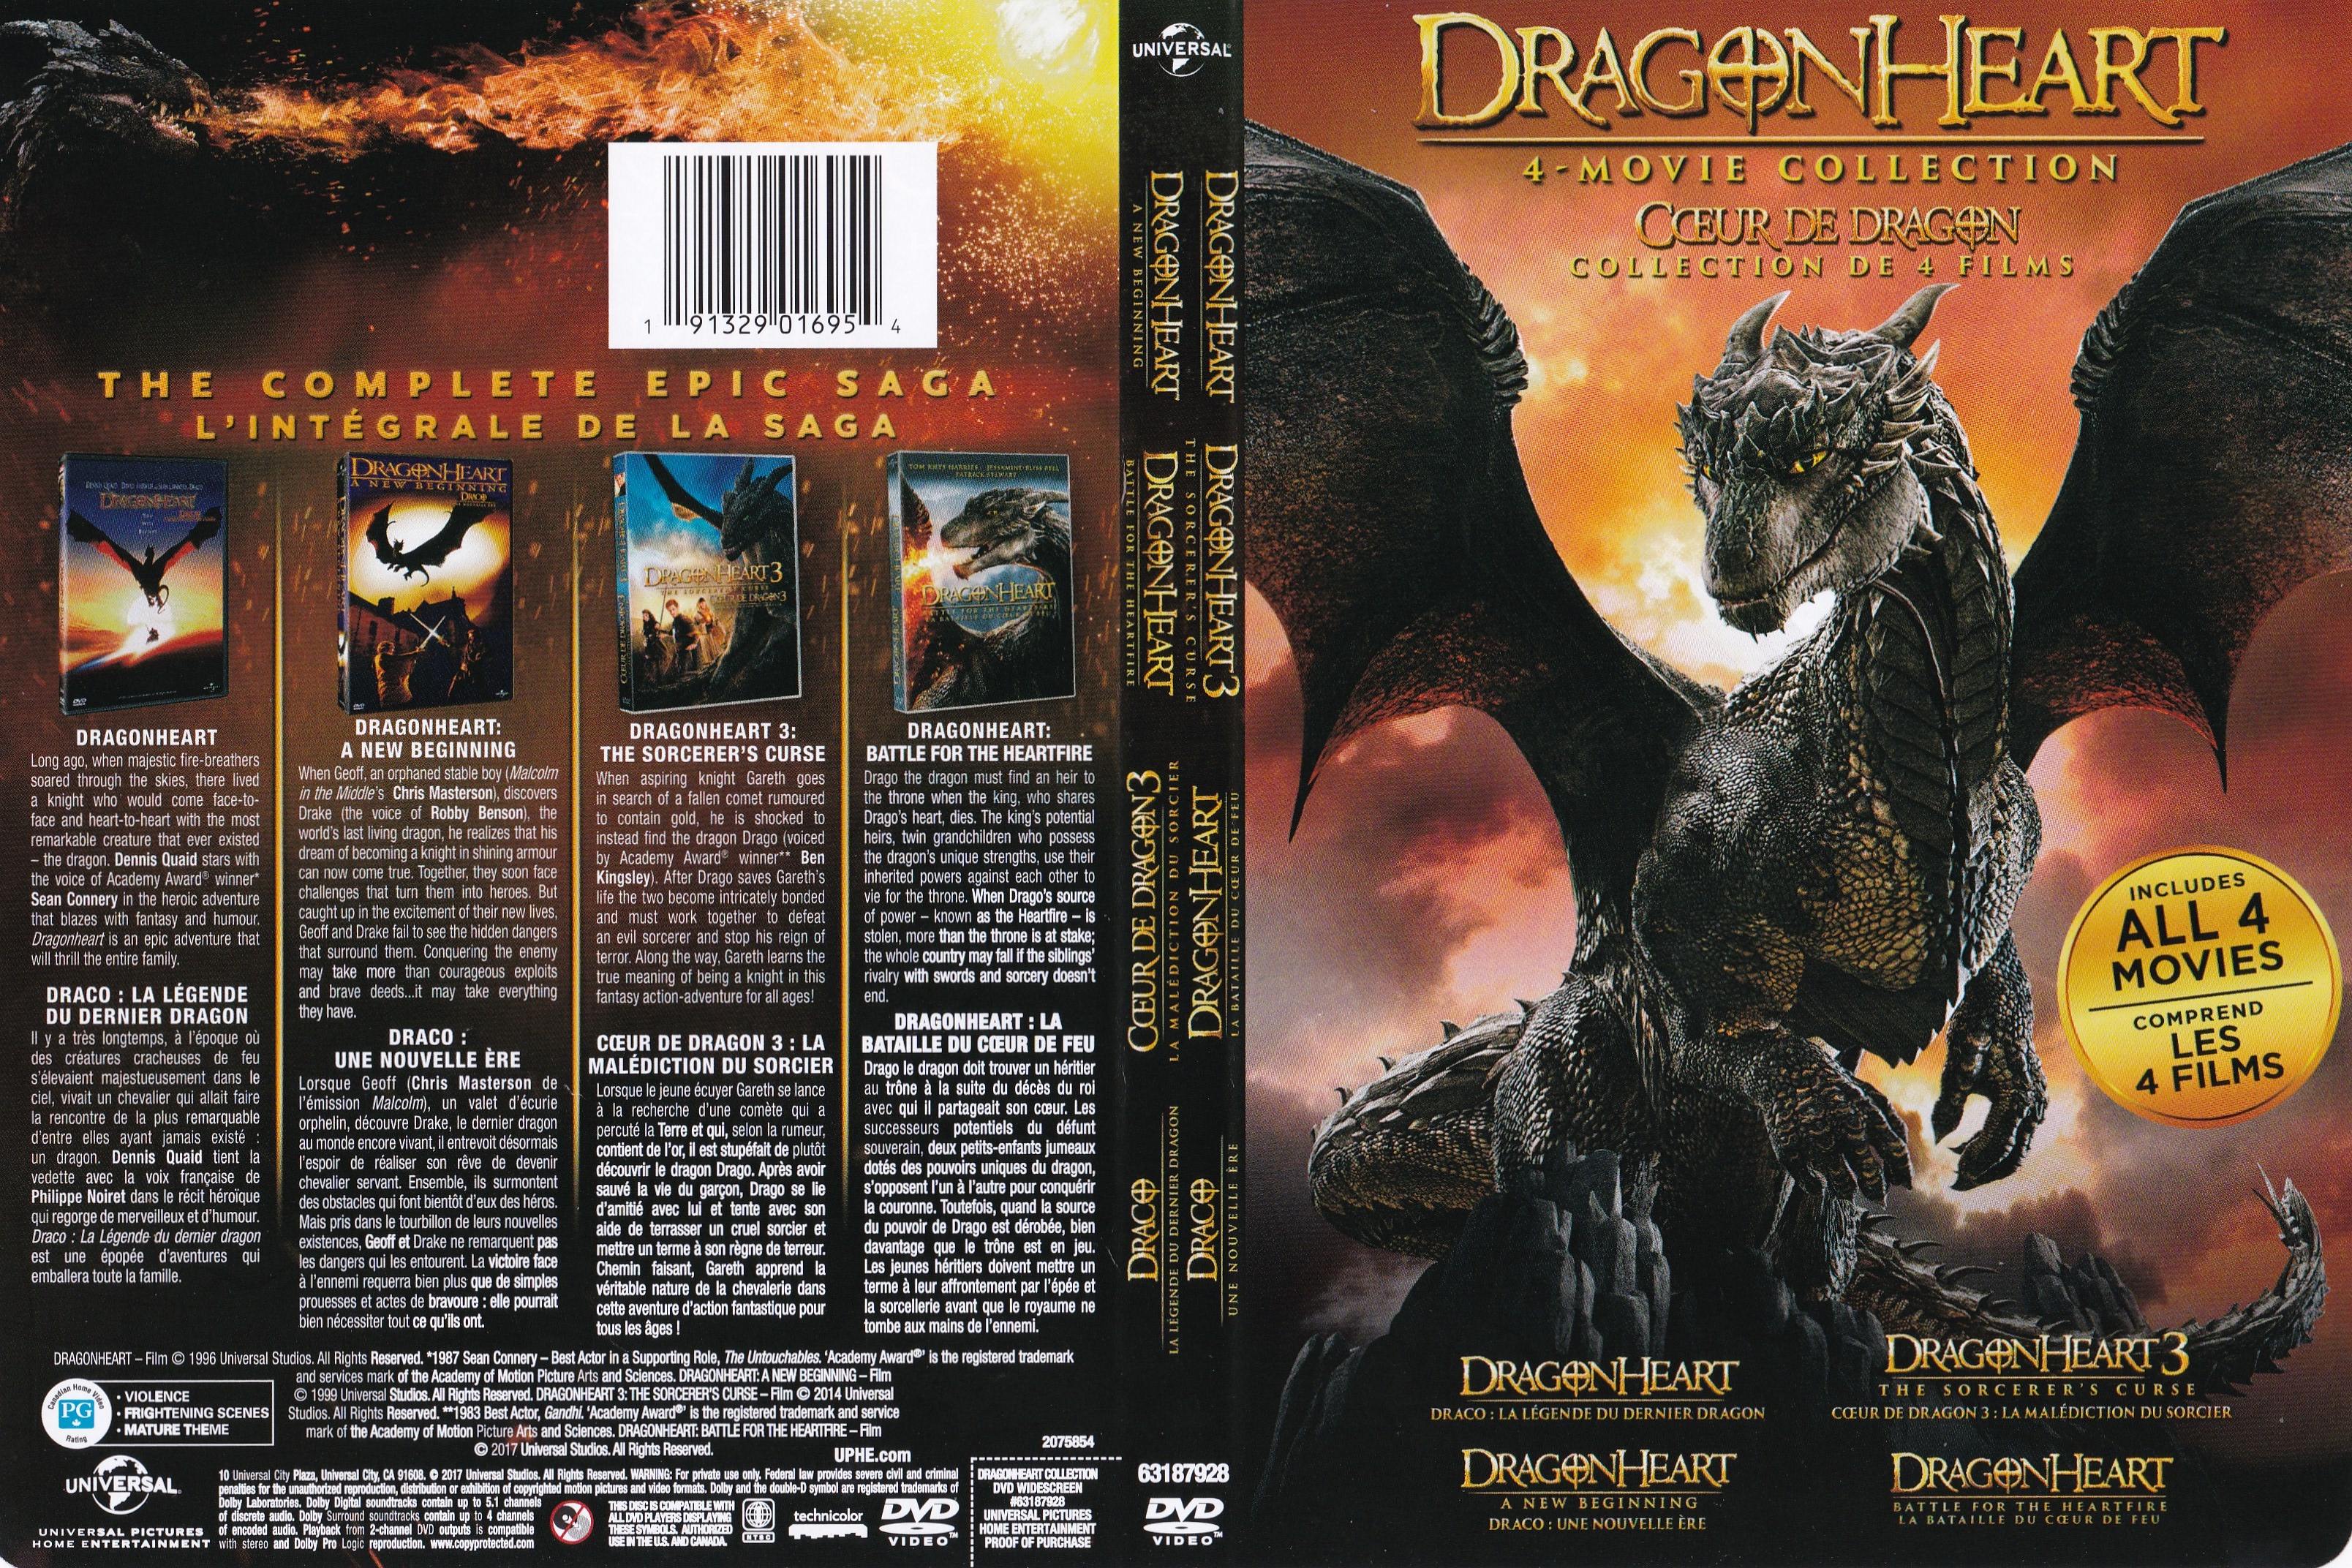 Jaquette DVD Coeur de dragon - Dragon heart COFFRET (Canadienne)